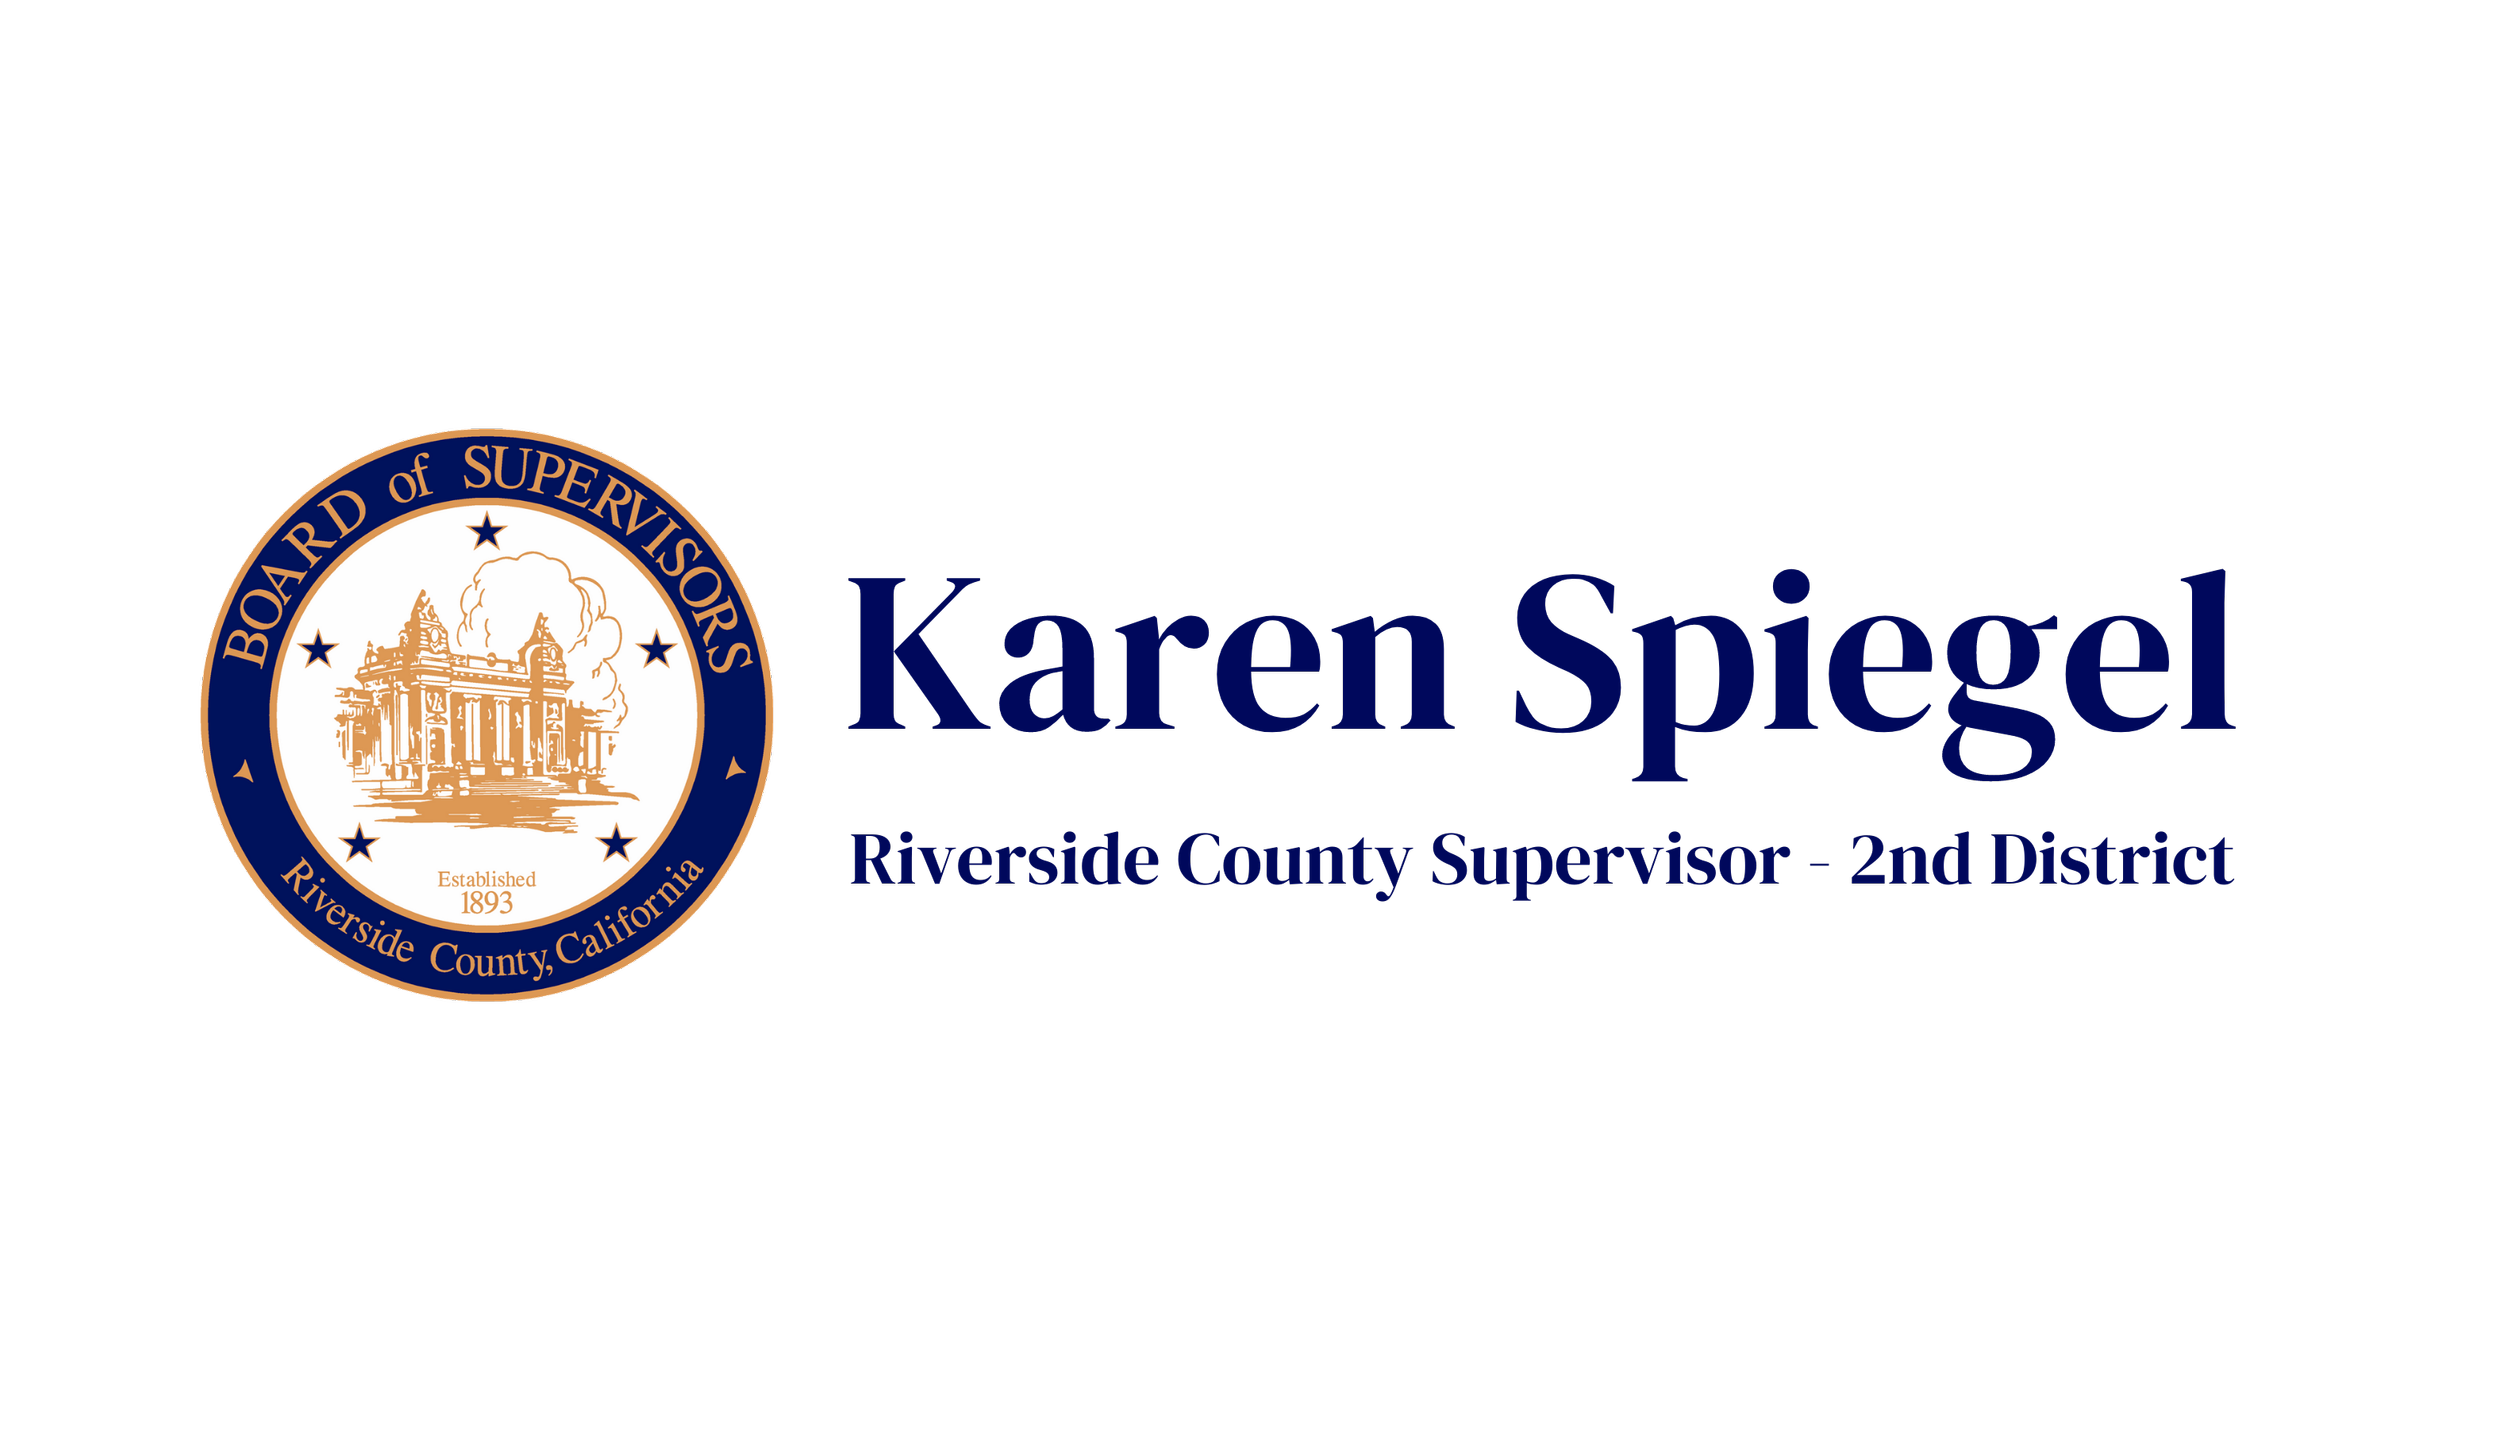 Karen Spiegel Riverside County Supervisor blue.png